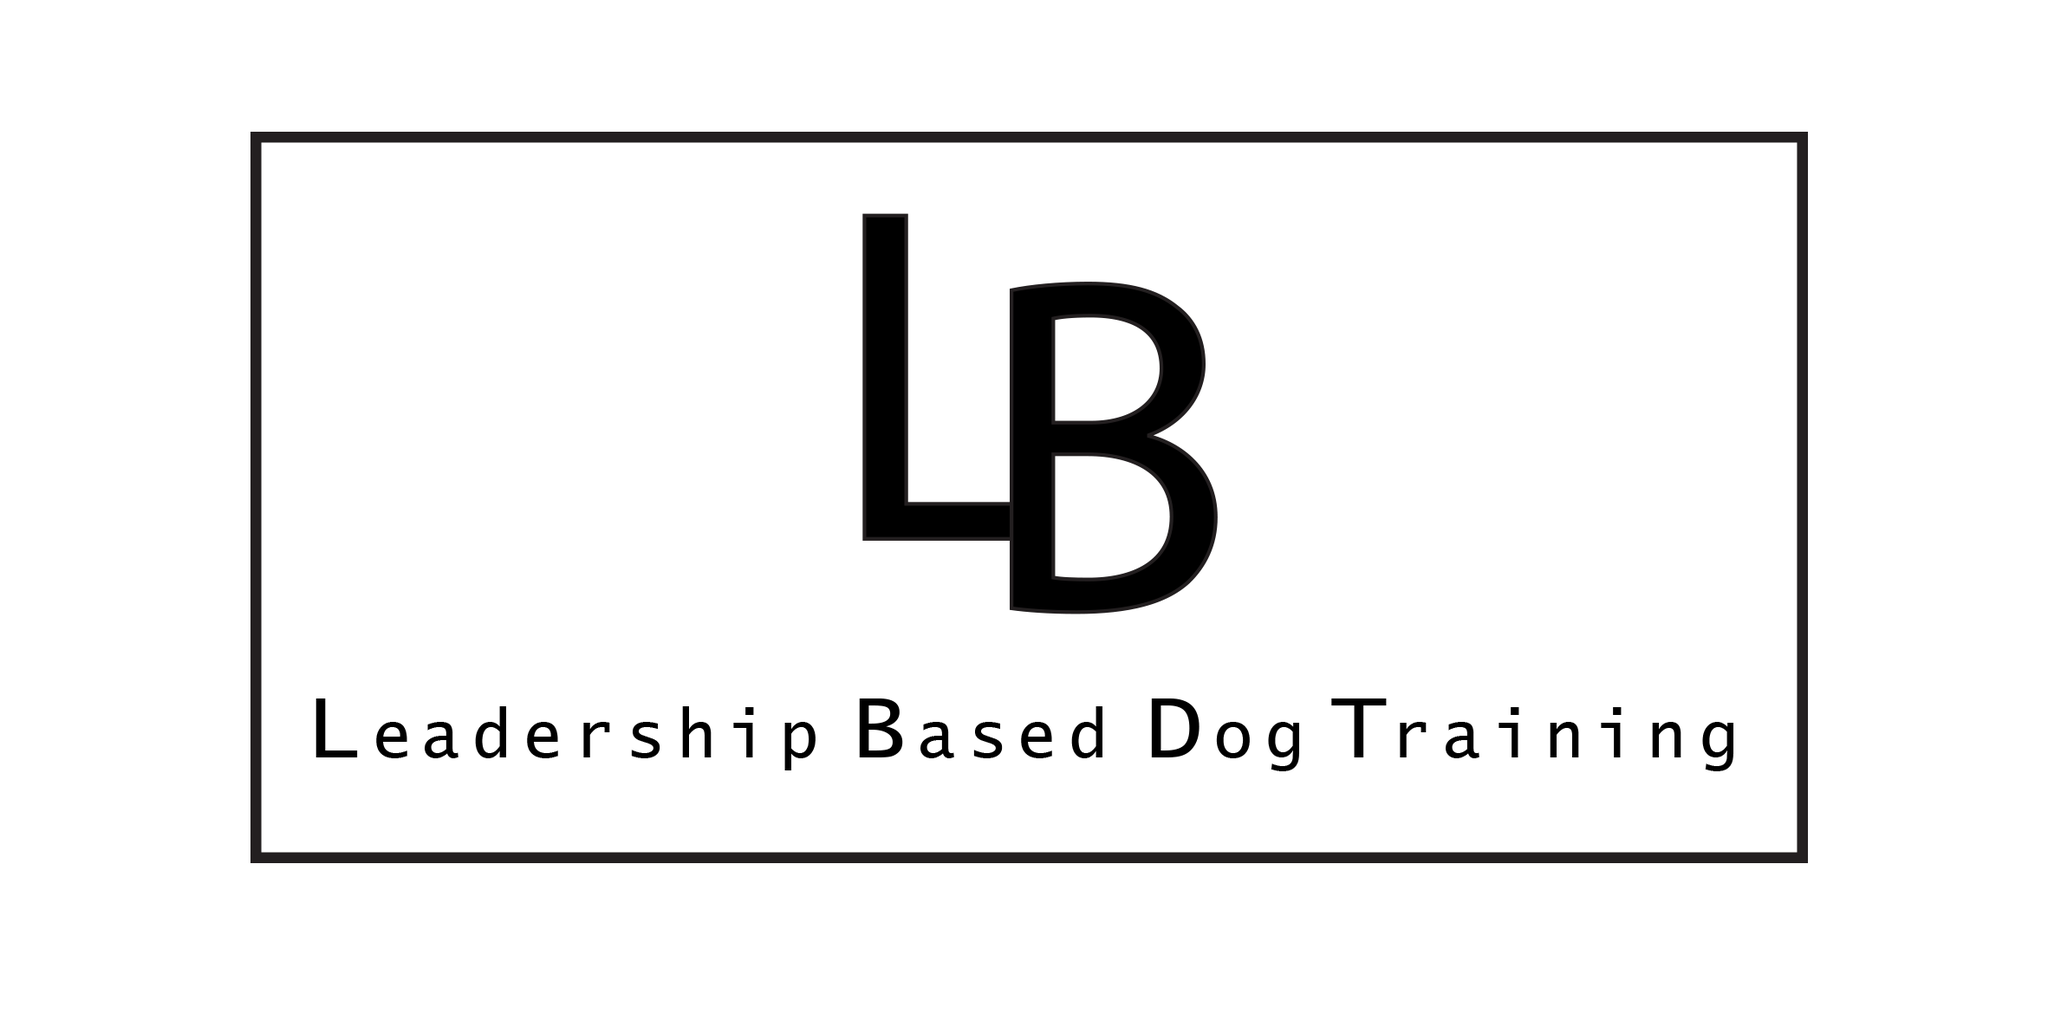 Leadership Based Dog Training 104 Av. Angell, Beaconsfield Quebec H9W 4V7